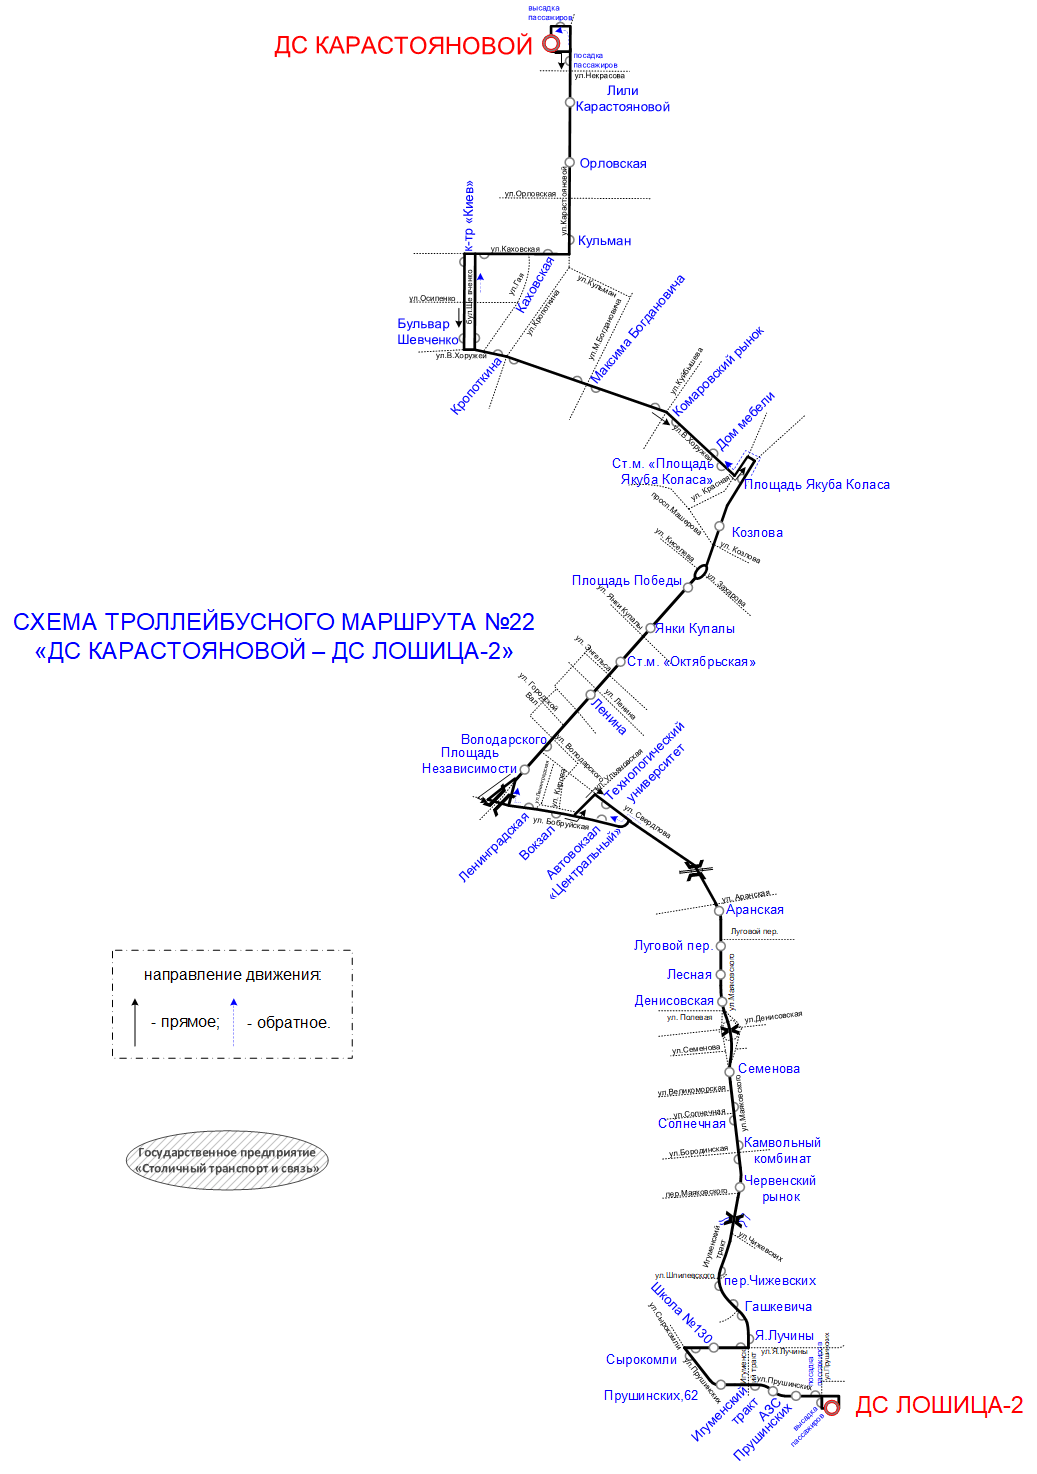 Схема троллейбусного мартшрута №22